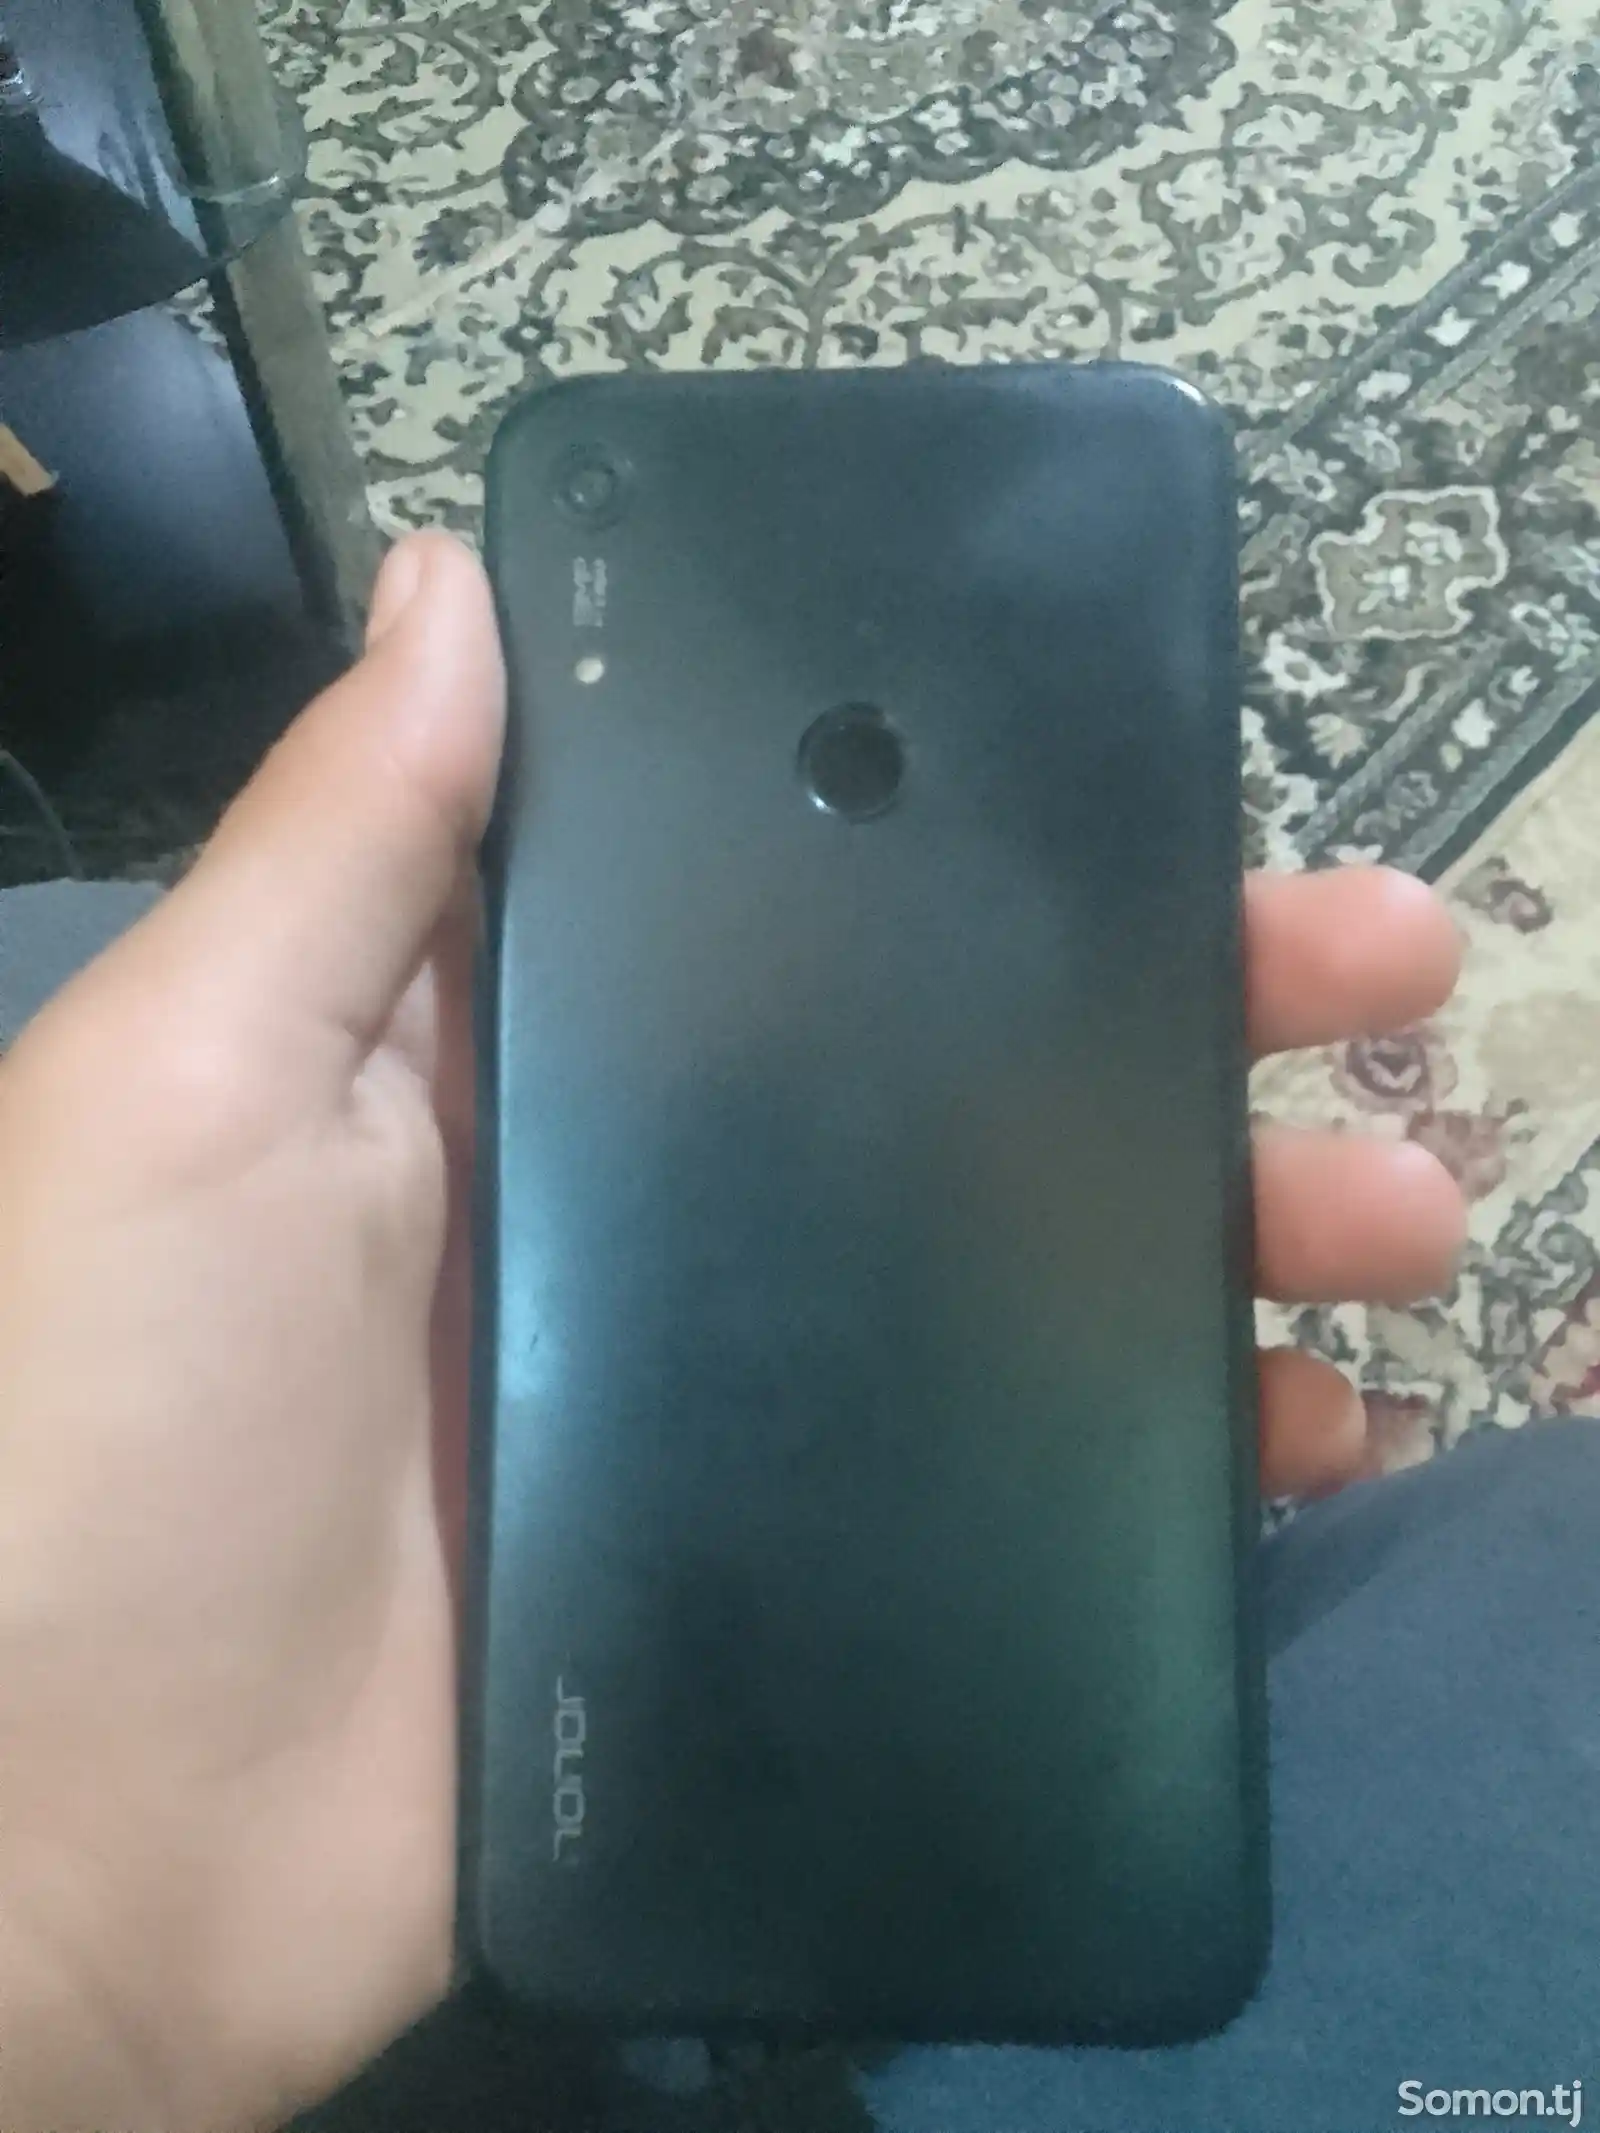 Телефон Huawei-3